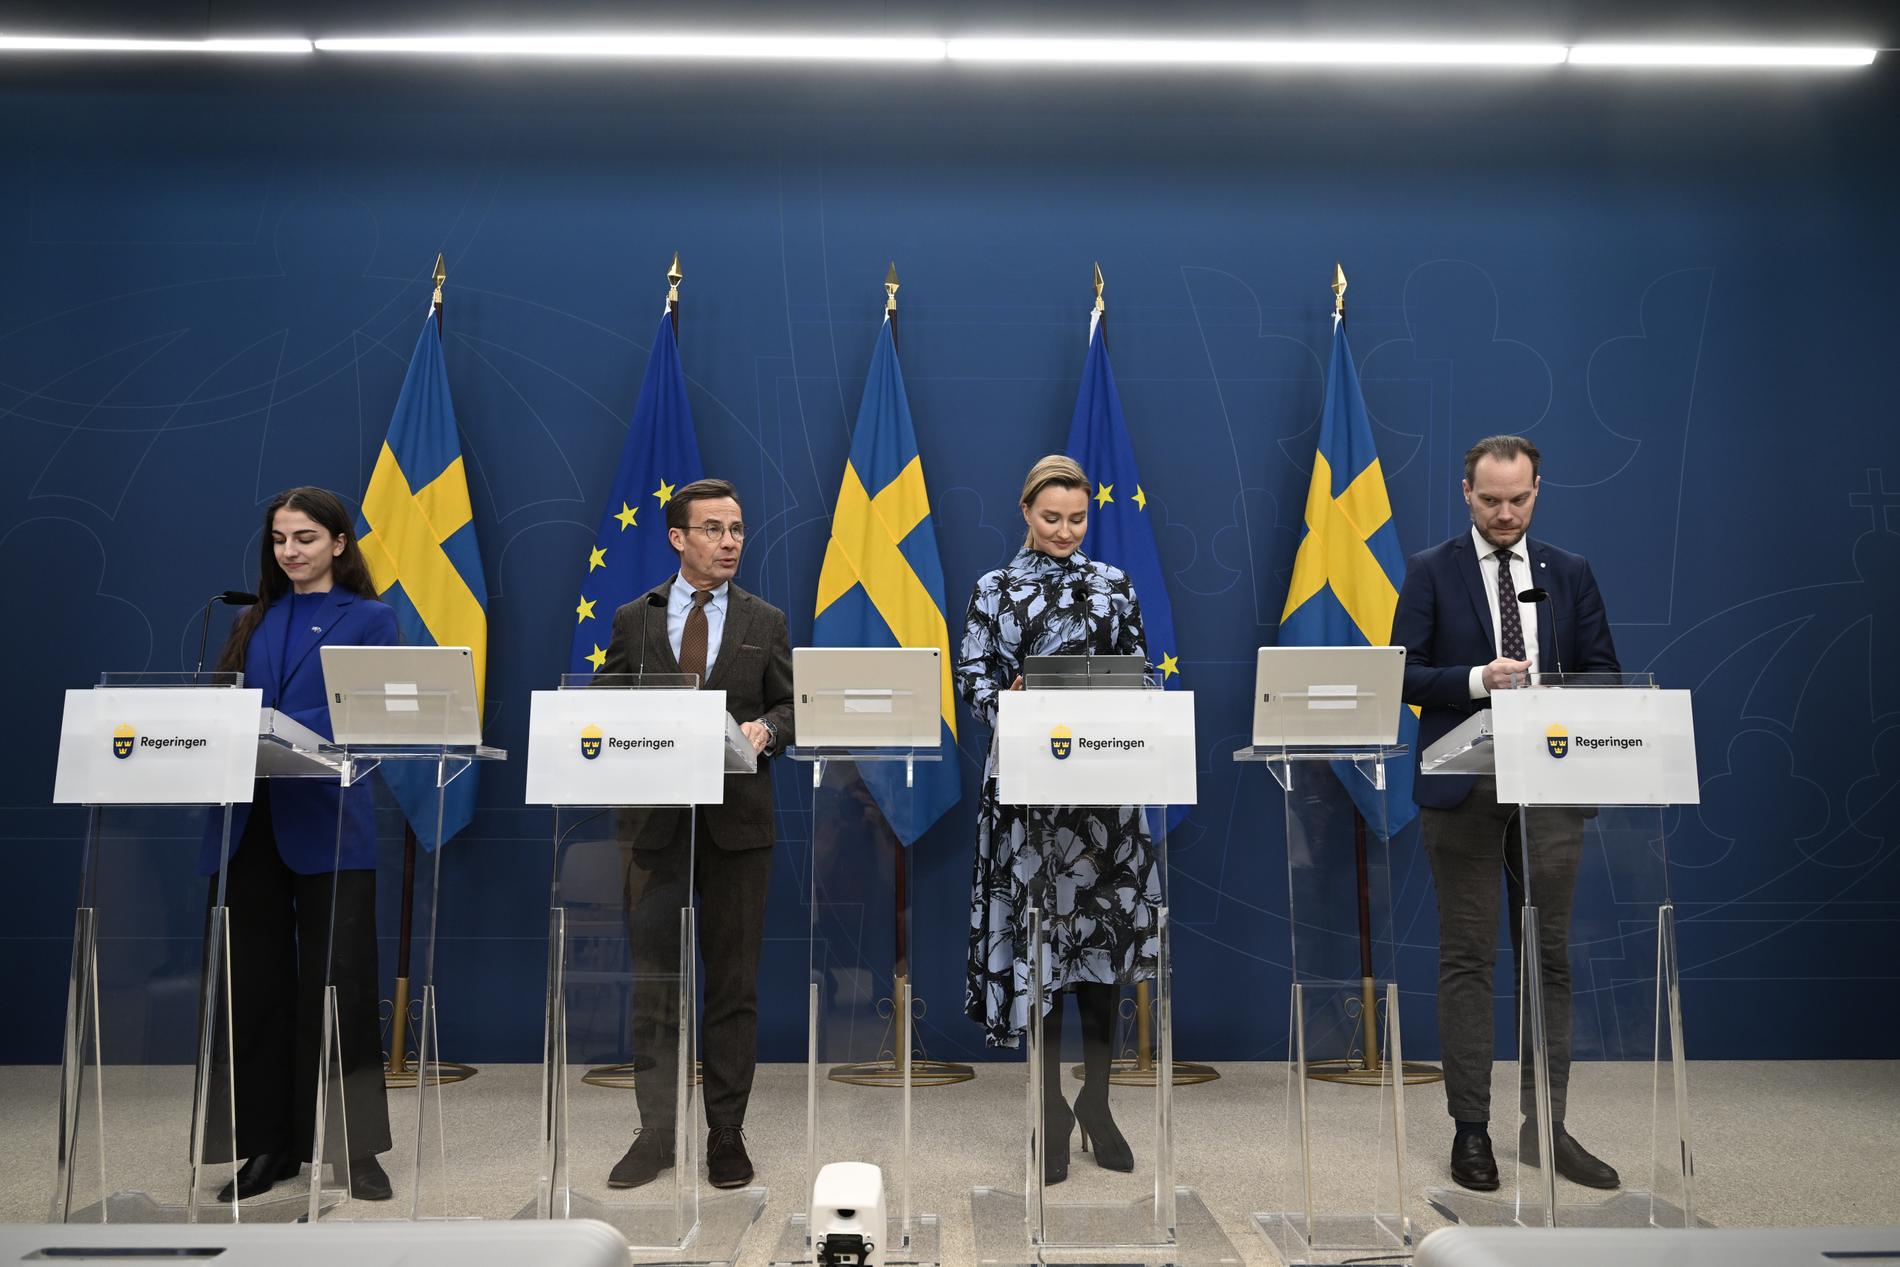 Regering och Sverigedemokraterna håller pressträff om klimatet.